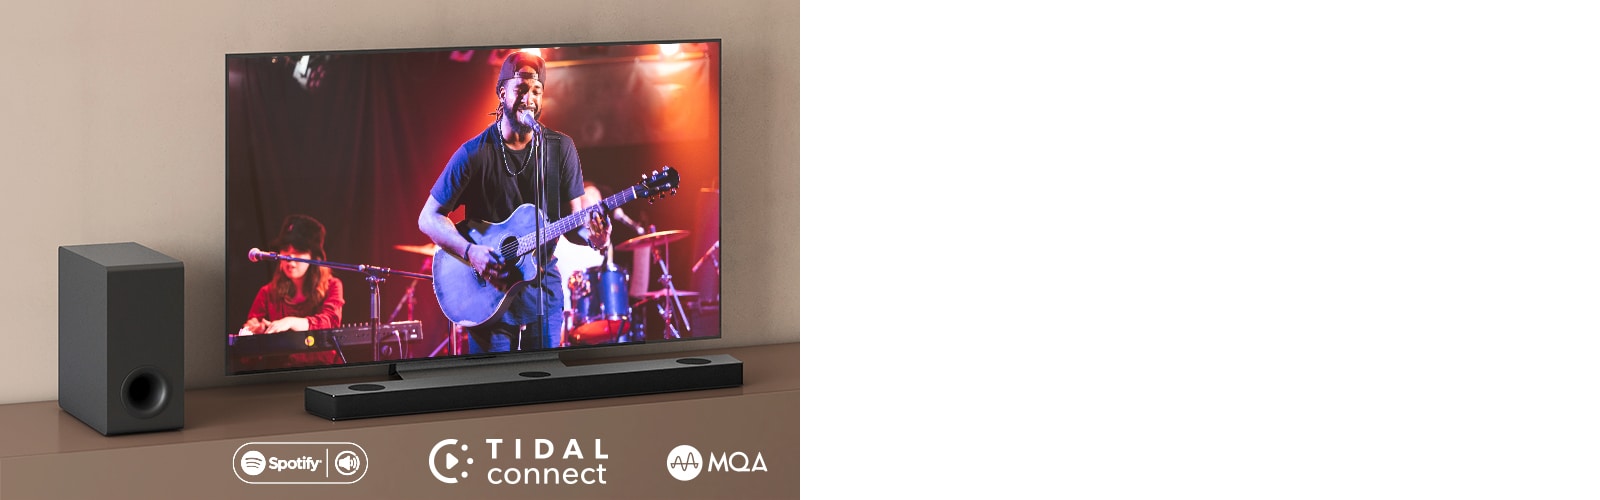 Телевизор LG е поставен на кафяв рафт, саундбар S95QR на LG е поставен пред телевизора. Субуфер е поставен от лявата страна на телевизора. Телевизор показва концертна сцена. В горния ляв ъгъл е показано обозначението НОВО.